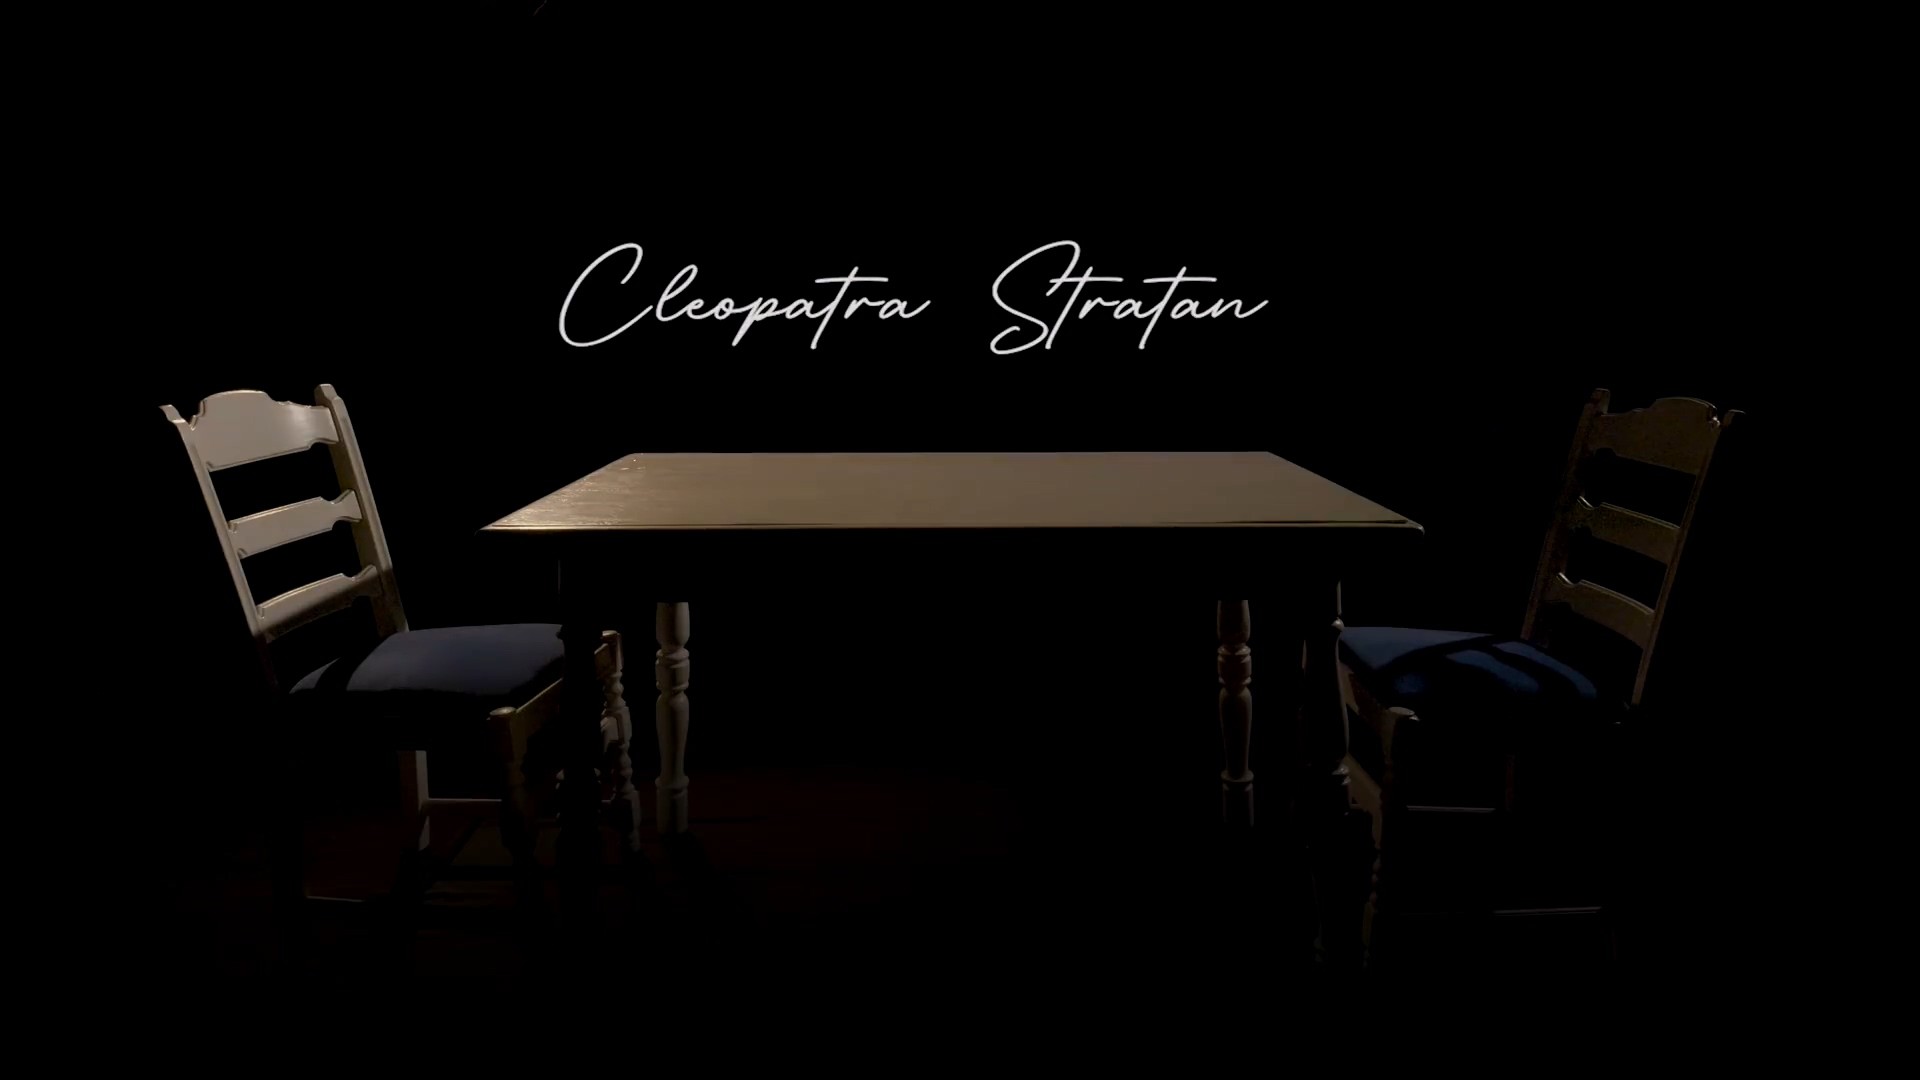 Cleopatra Stratan - Ceasu' Bate Iar Versuri